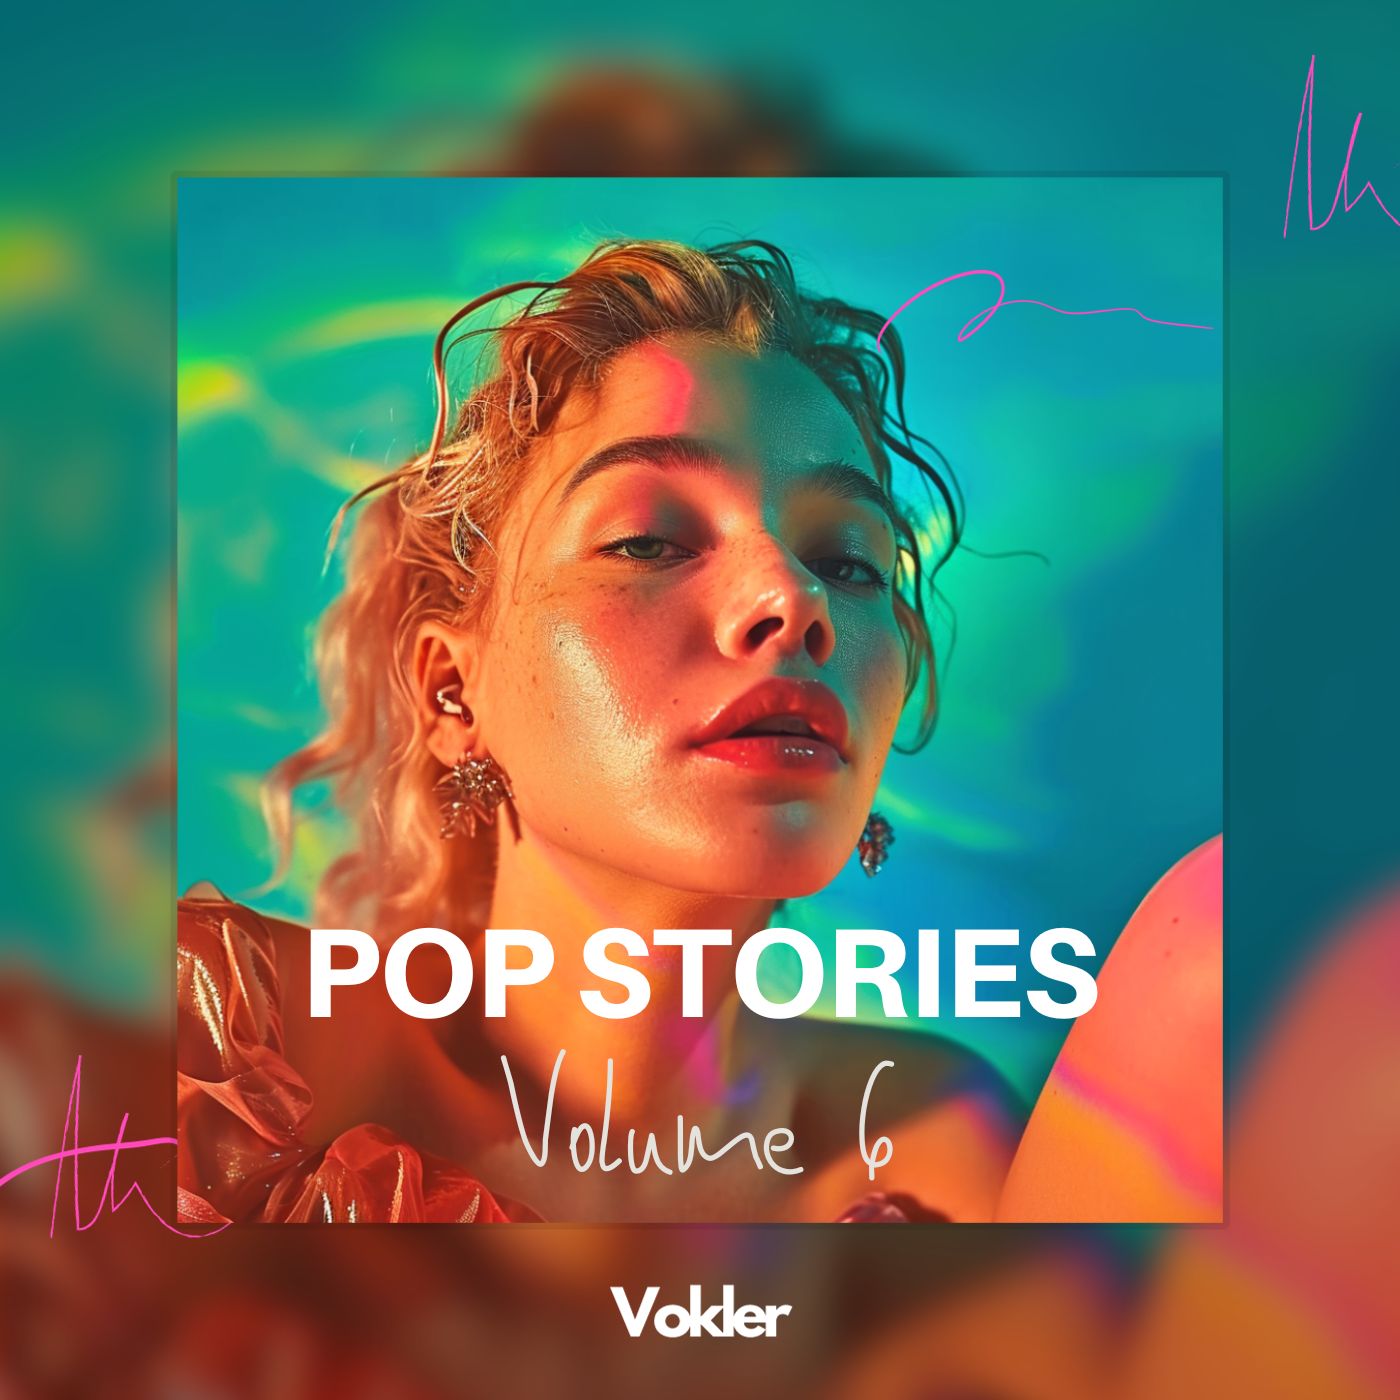 Pop Stories Vol. 6